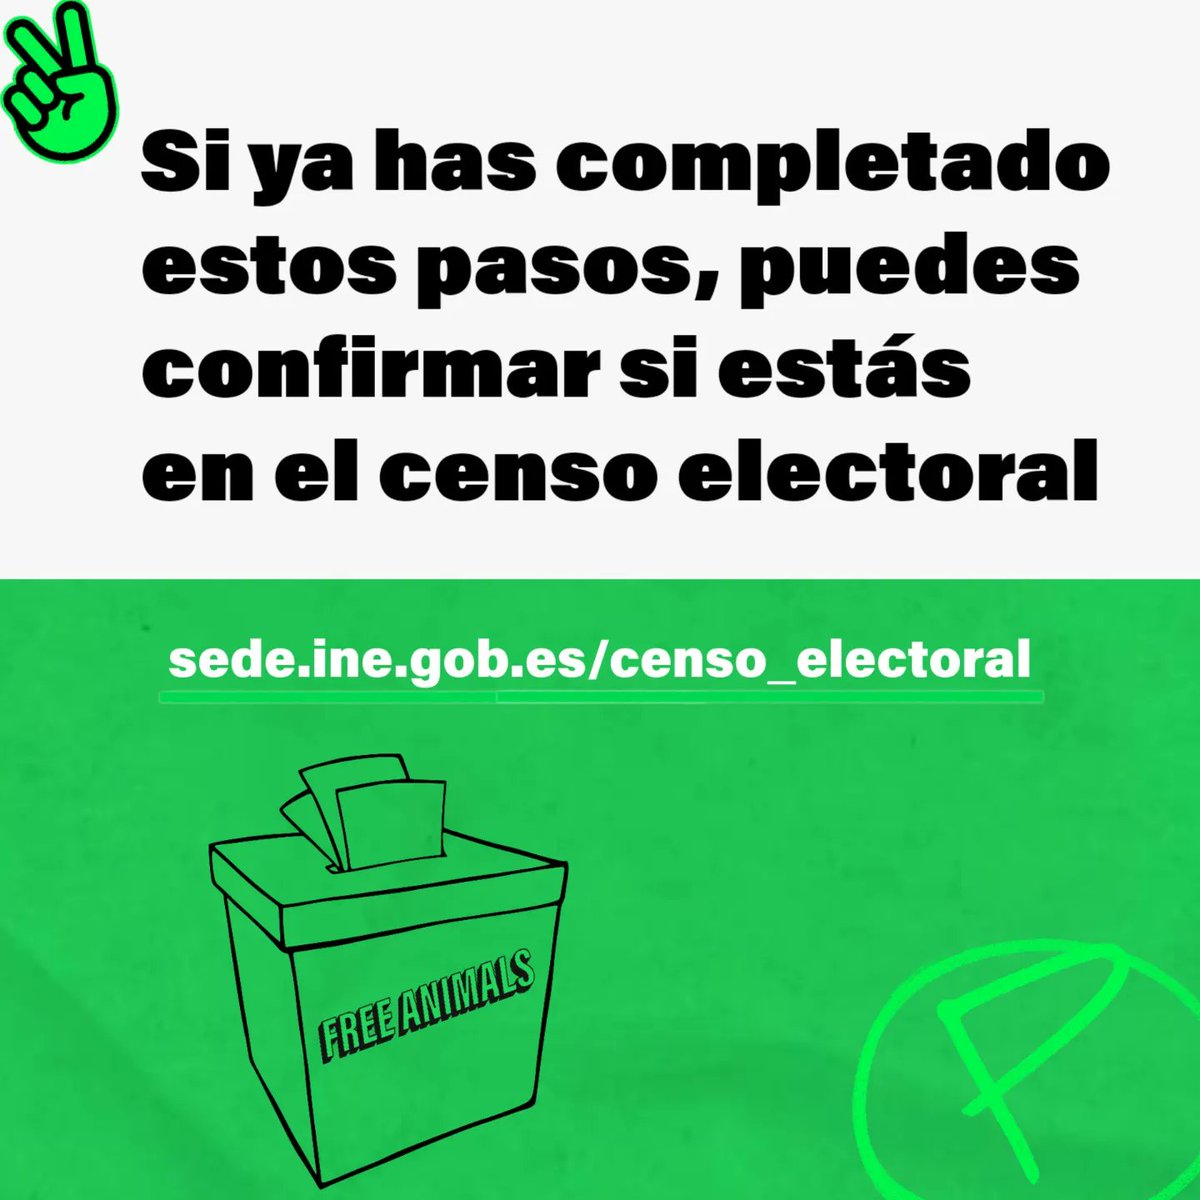 El 28 de MAYO se celebran #eleccionesmunicipales. Si eres ciudadana/o de la UE y resides en España, puedes ejercer tu derecho al voto si cumples los requisitos.